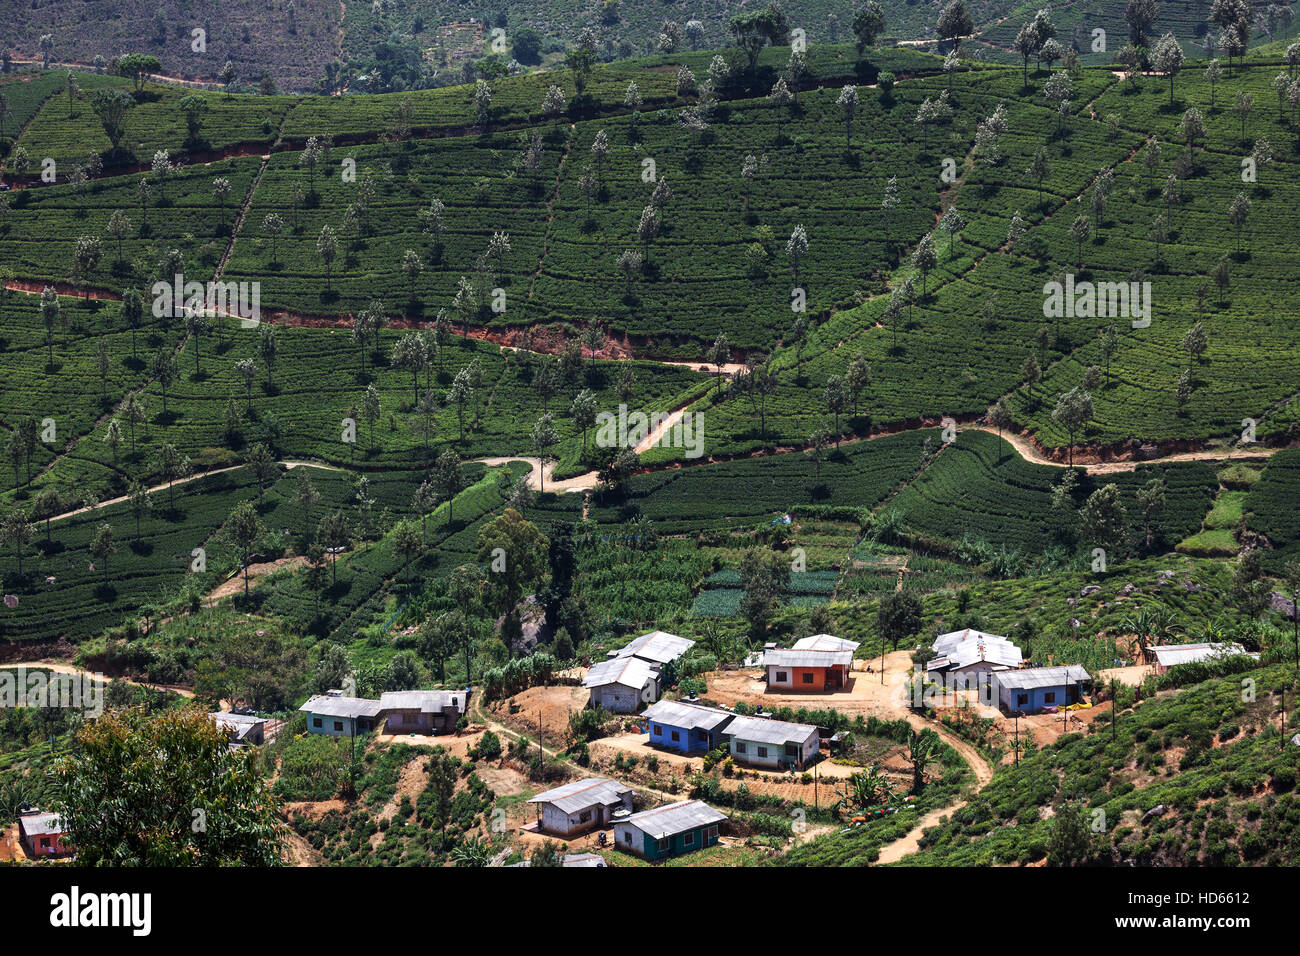 Les usines de thé (Camellia sinensis), la culture des hautes terres, Haputale, Province du Centre, au Sri Lanka Banque D'Images